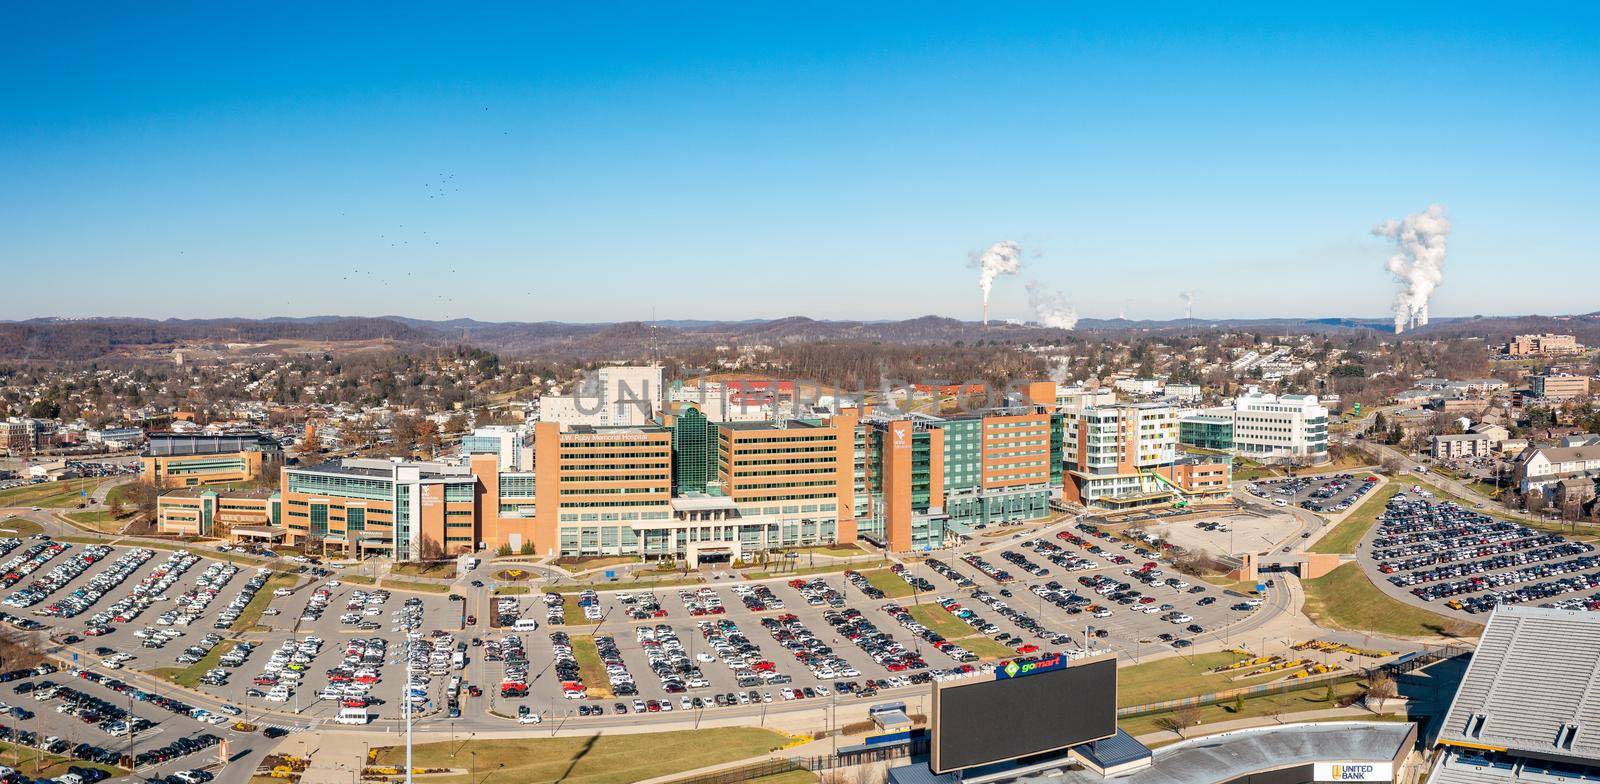 Ruby Memorial hospital buildings in Morgantown West Virginia by steheap